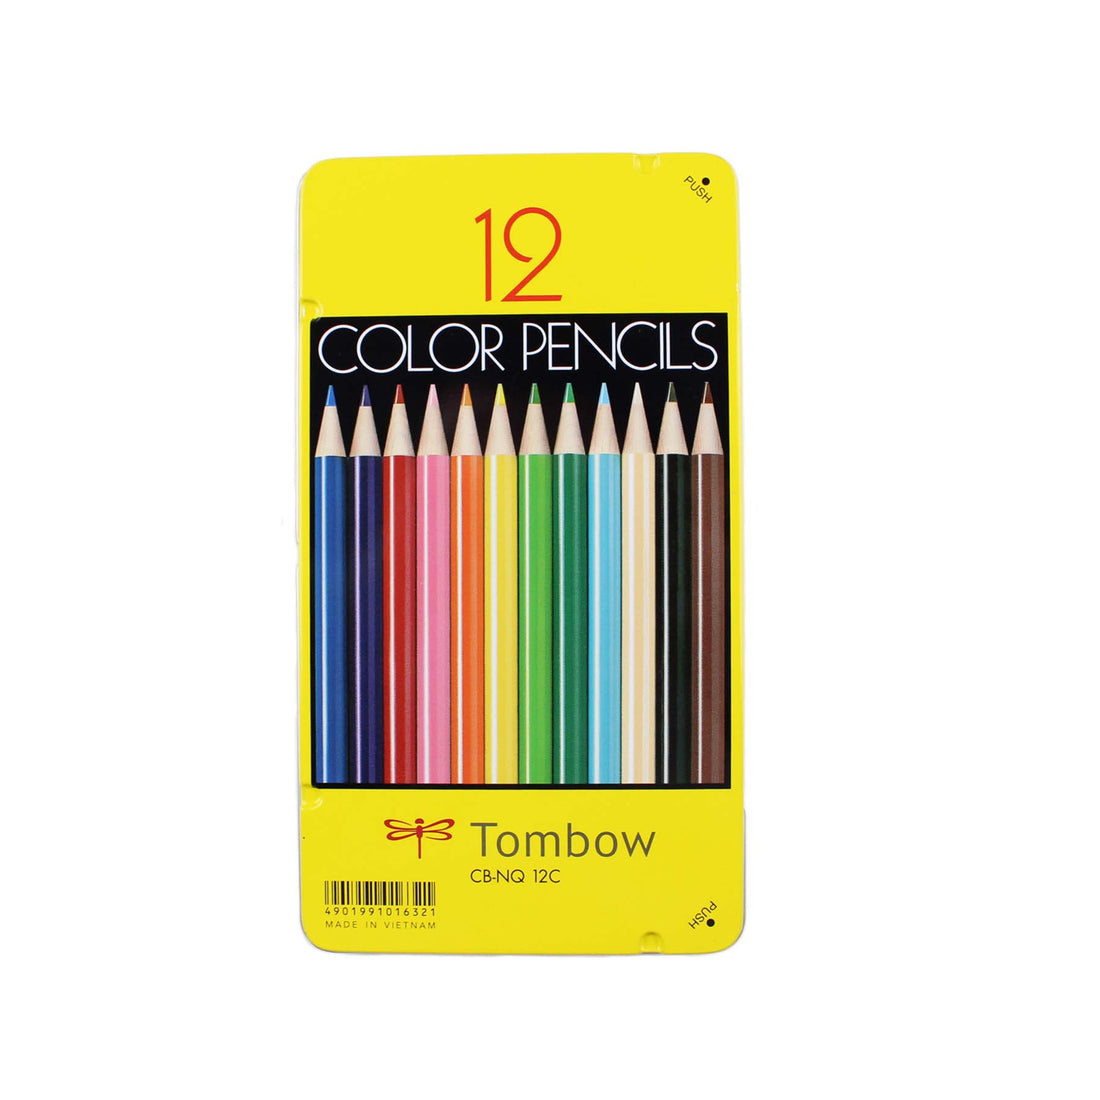 1500 Series Colored Pencils - 12PC Set - Parkette.